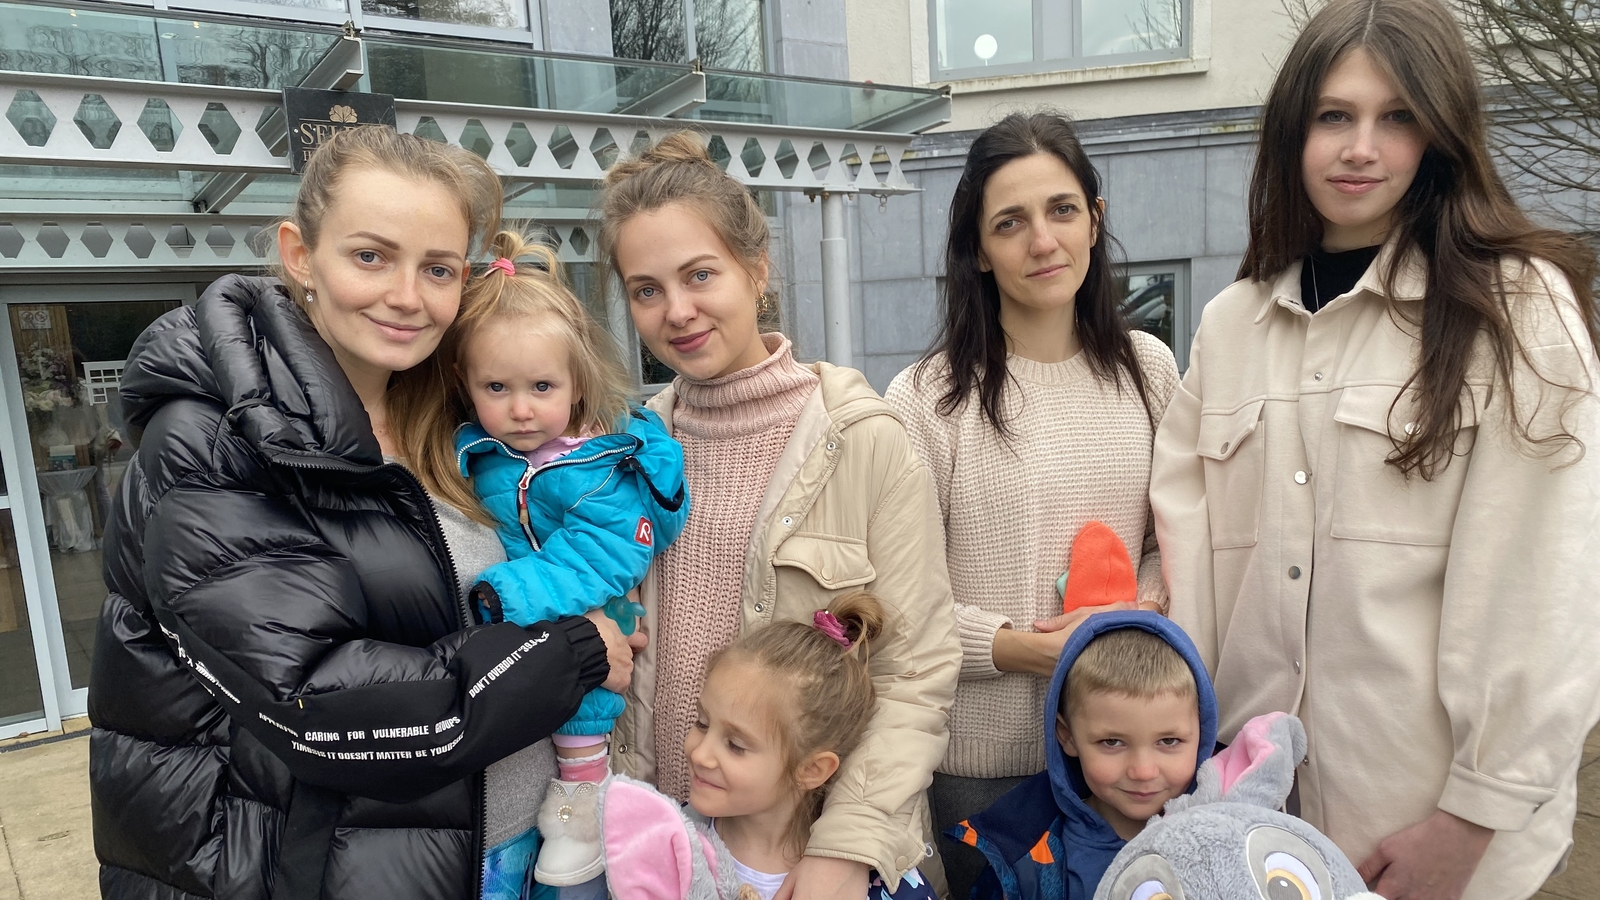 Mayo hotel does utmost as 300 Ukrainian refugees arrive